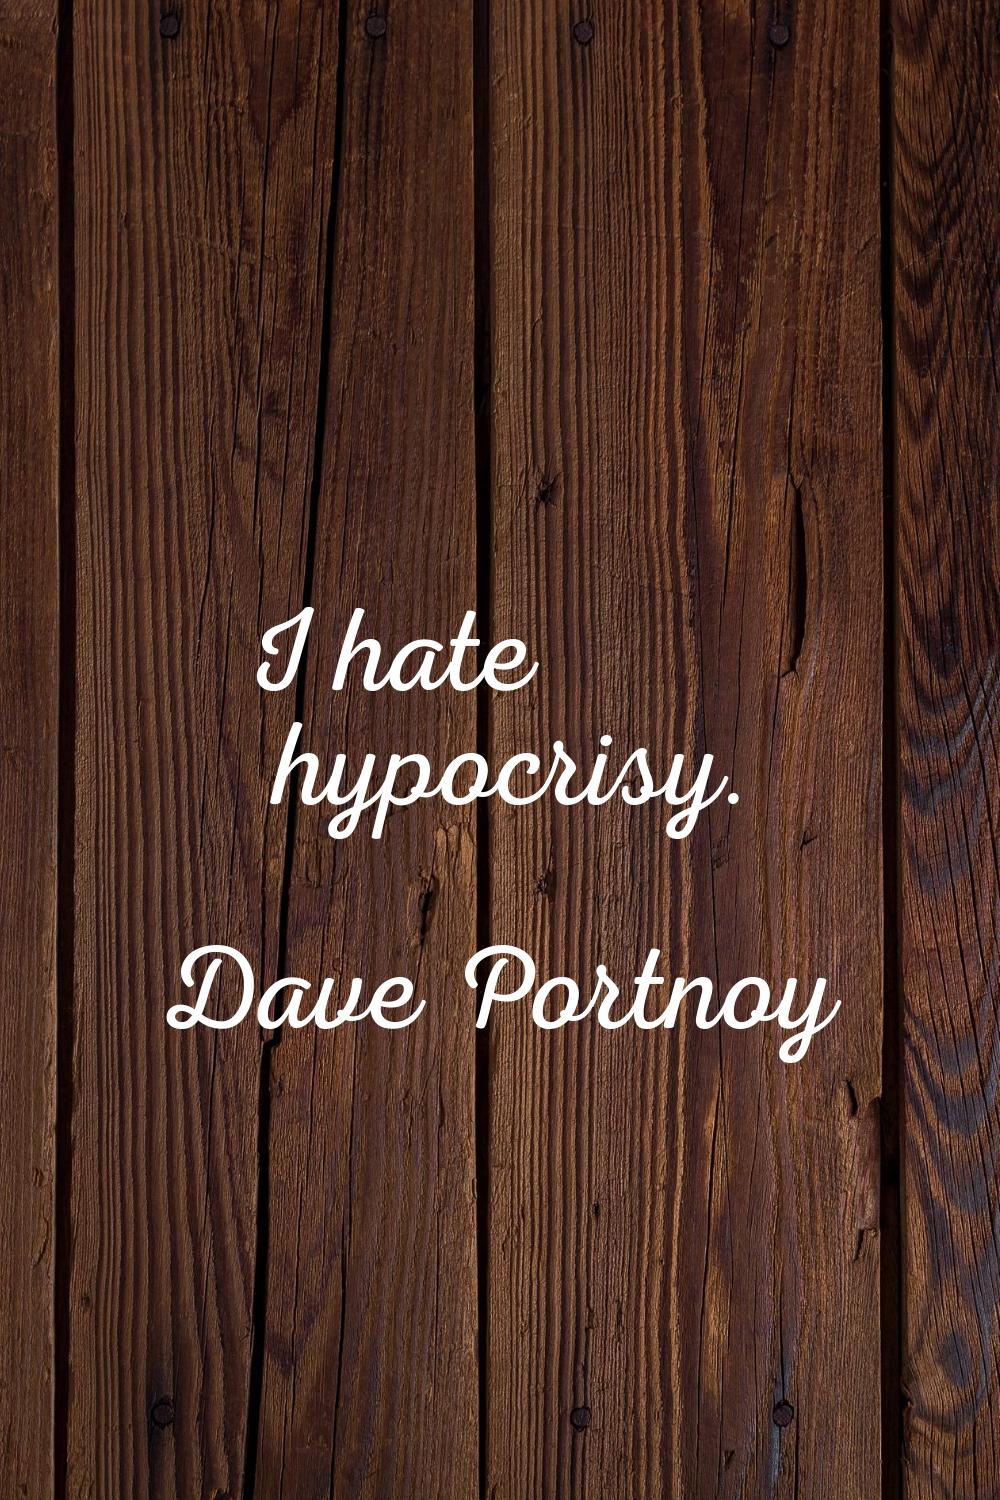 I hate hypocrisy.